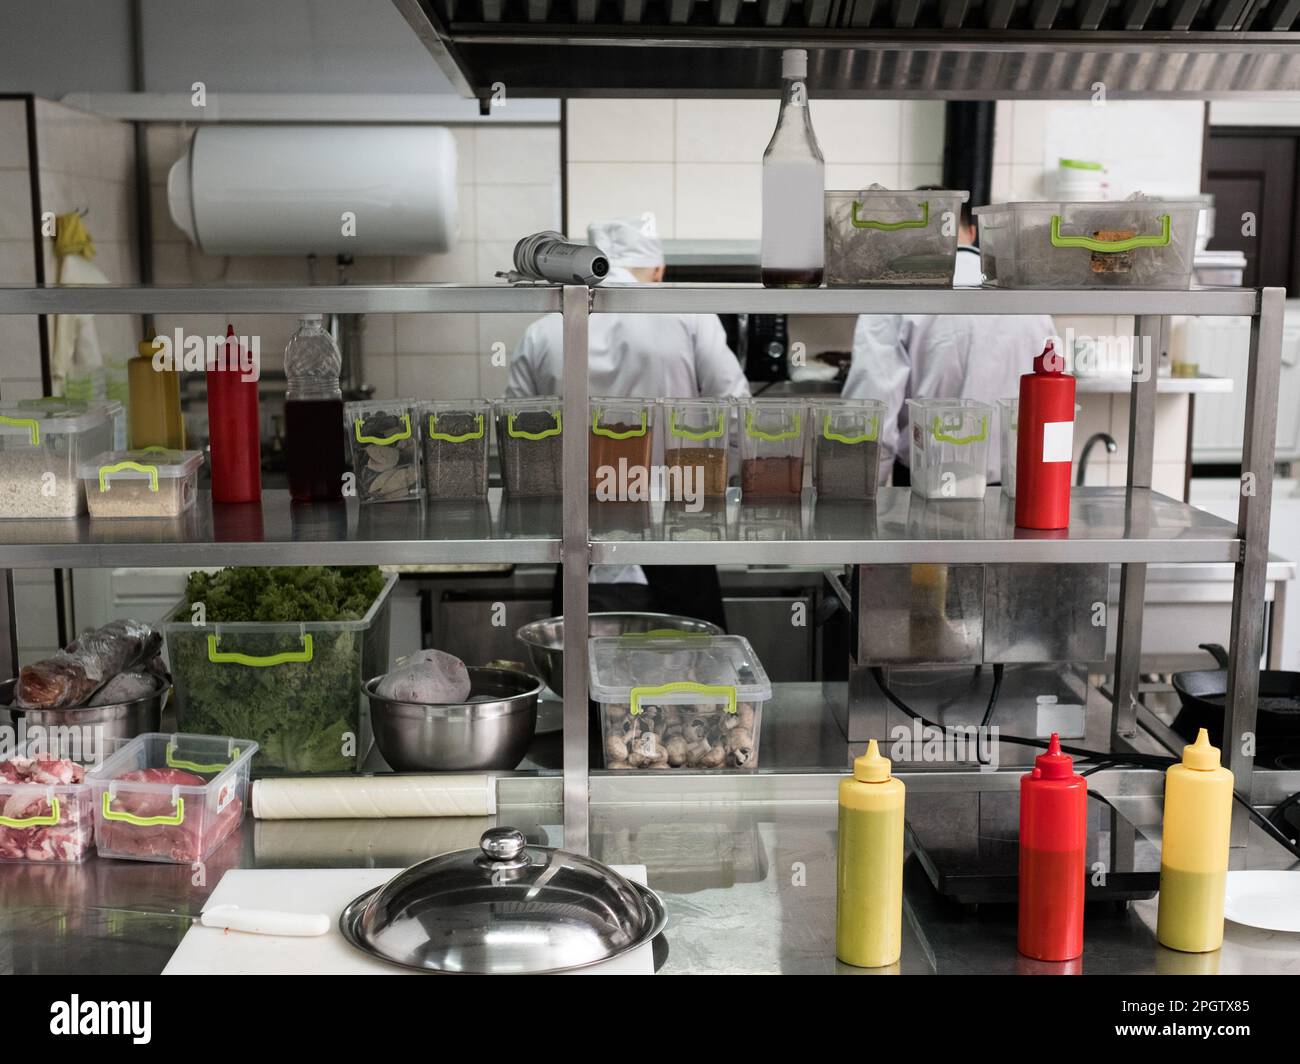 restaurant kitchen interior workspace clean tidy Stock Photo